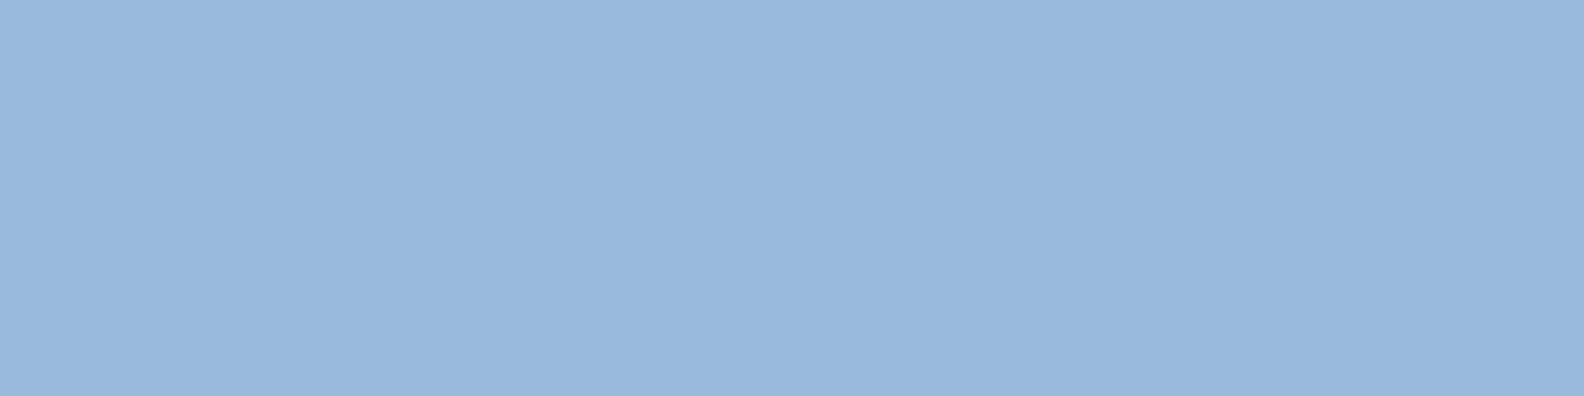 1584x396 Carolina Blue Solid Color Background